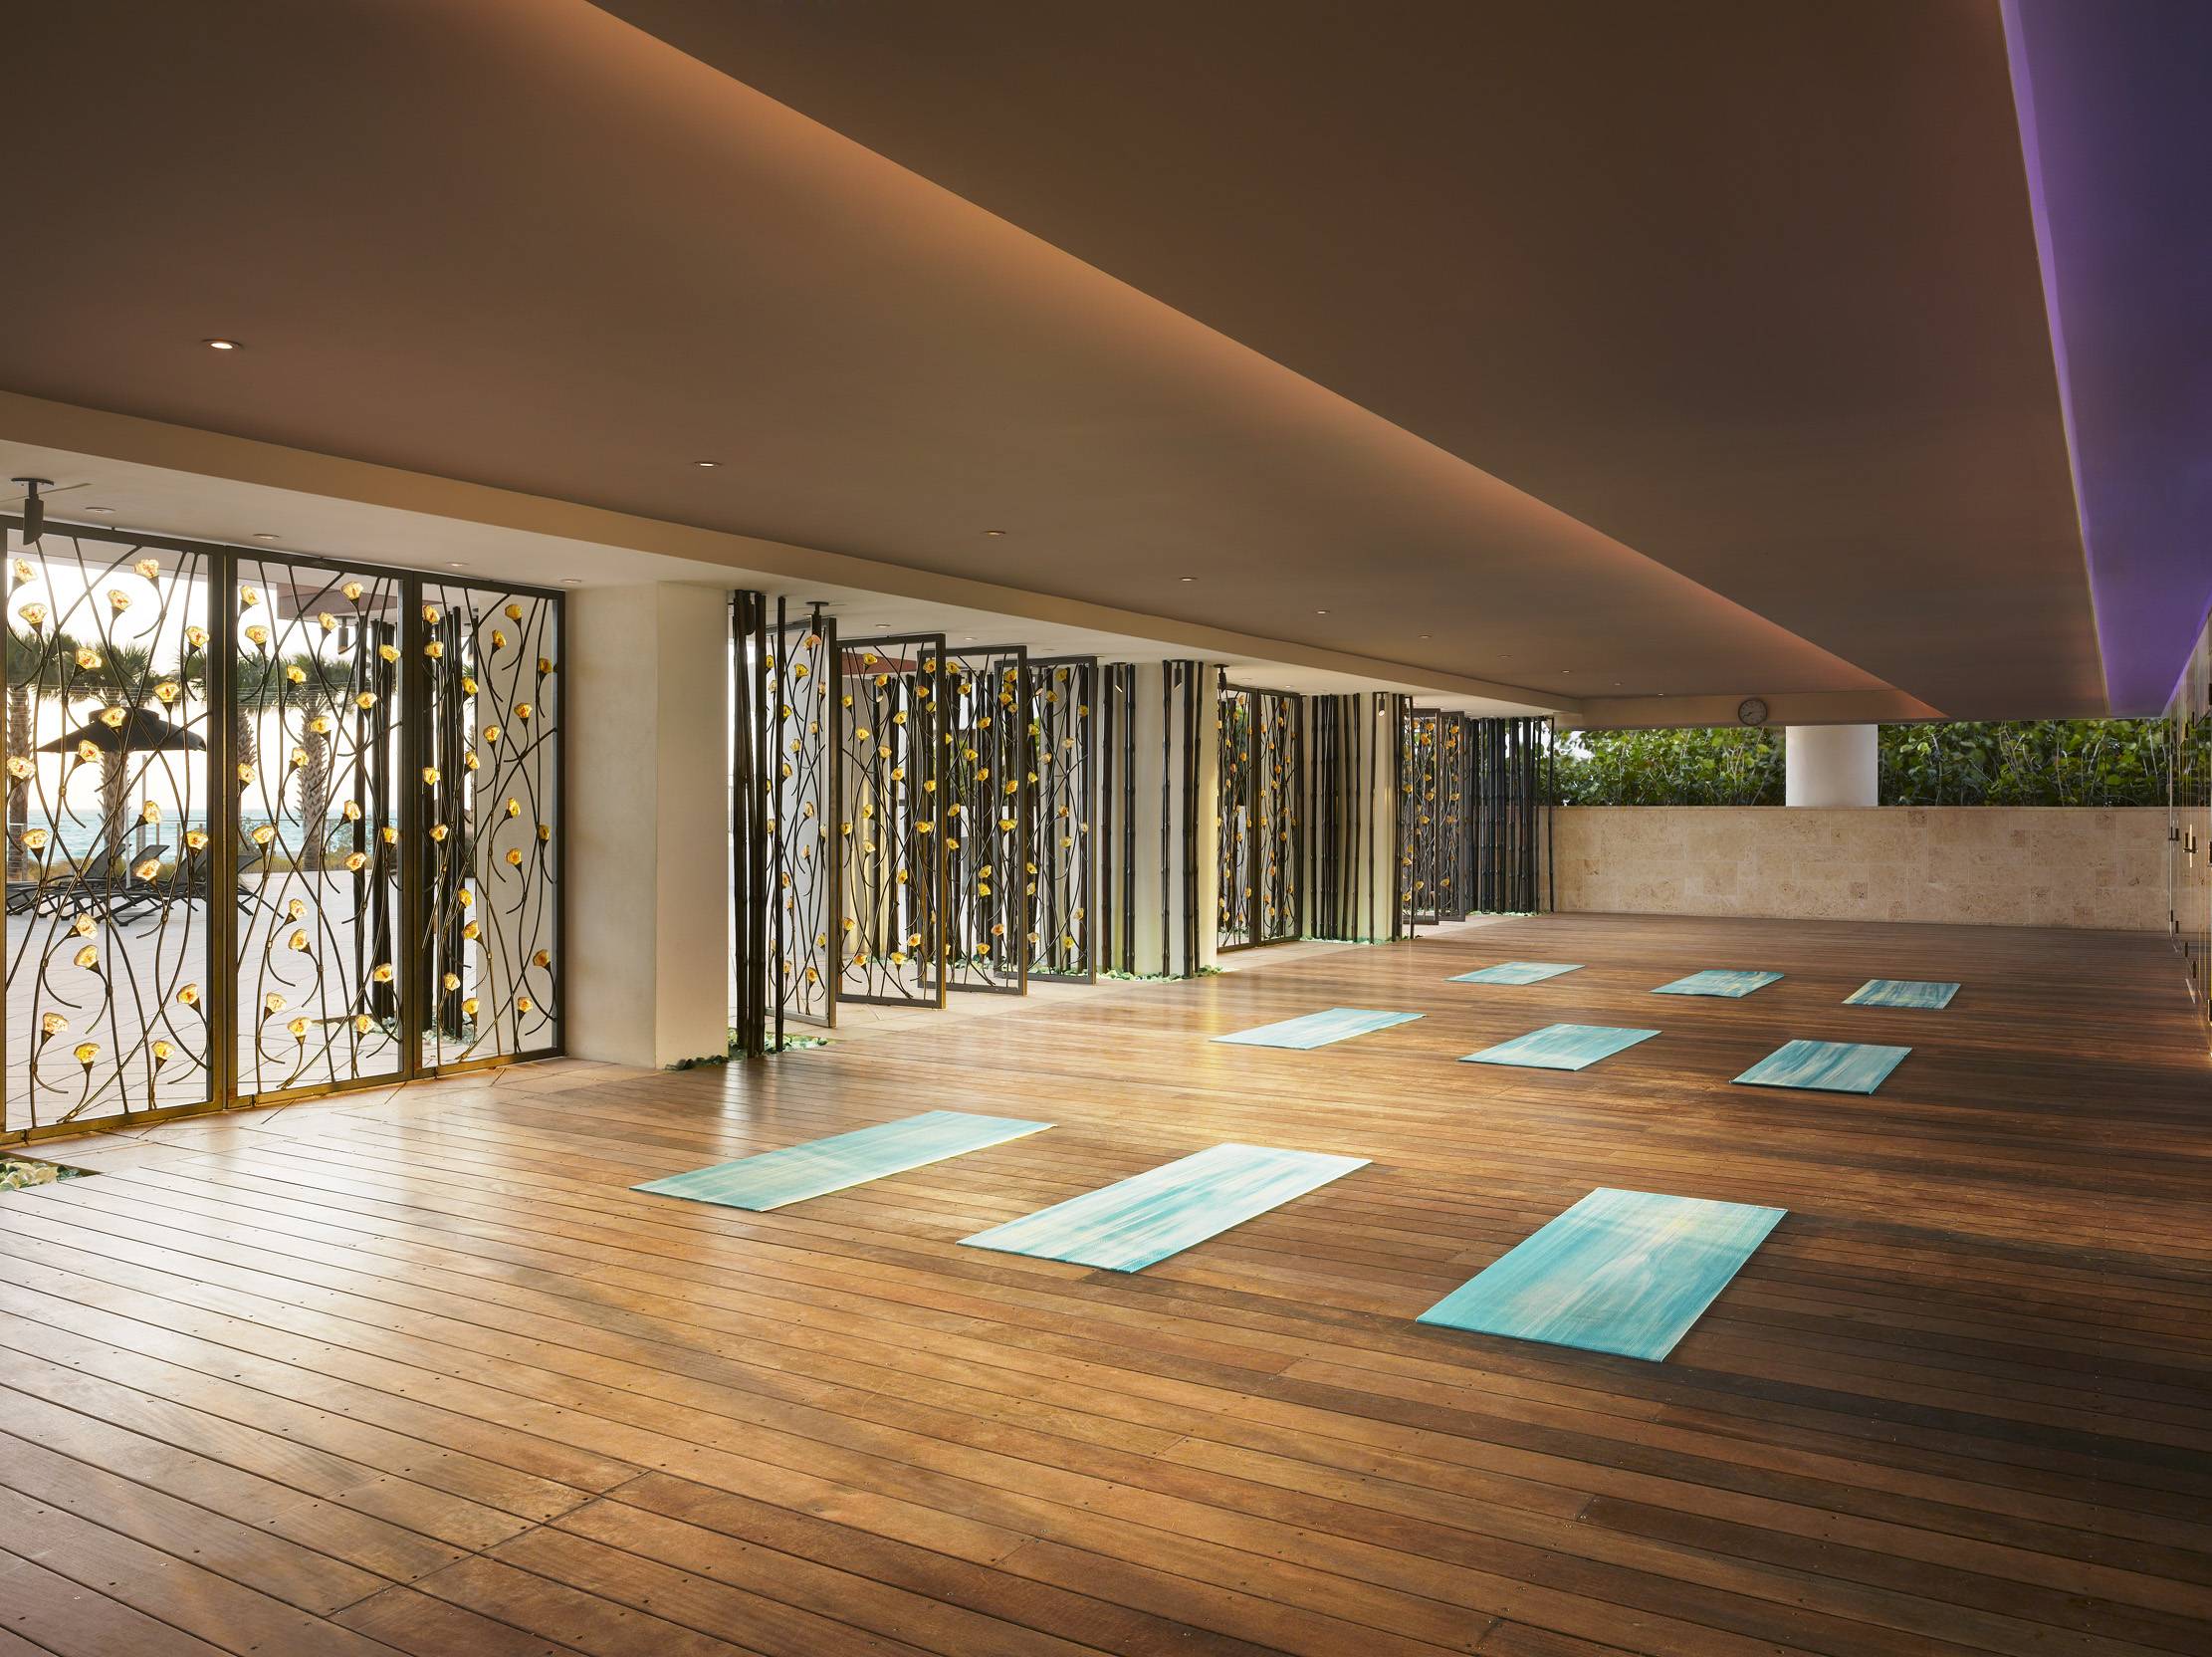 46 Best Yoga Center Images On Pinterest Yoga Studio Design Yoga for Home Yoga Studio Design